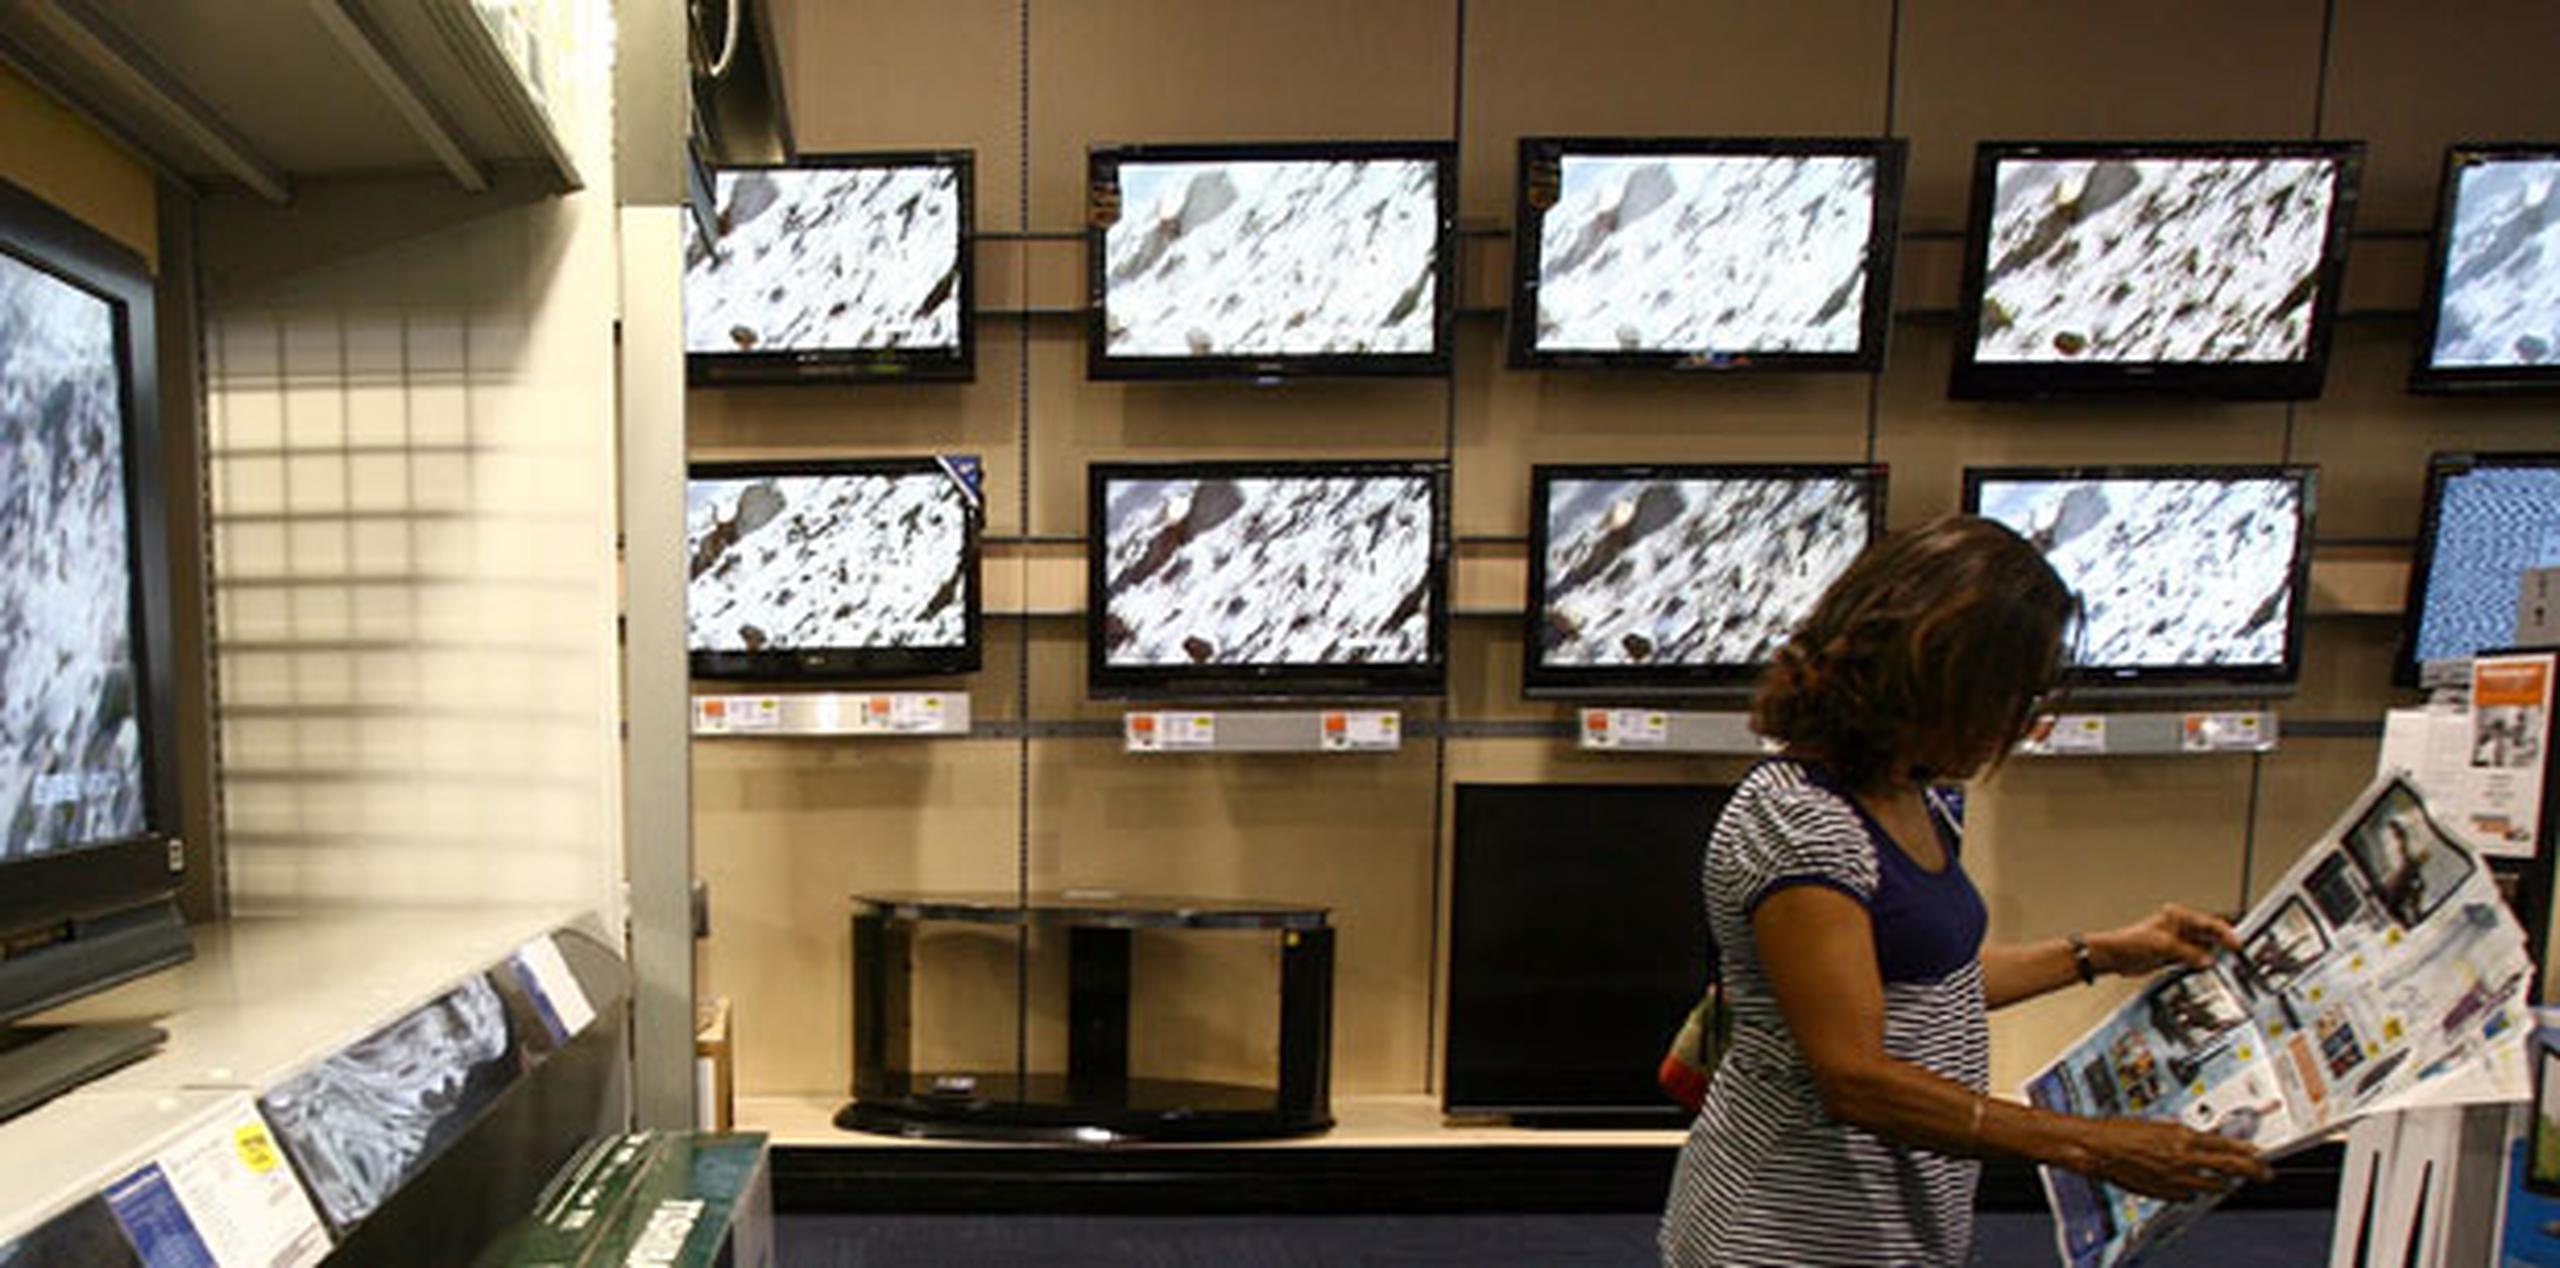 En el renglón de televisores, que nuevamente ocuparon espacios destacados en los “shoppers” de megatiendas, esta vez se destacaron anuncios de televisores Samsung, principalmente modelos Smart TV, que se vendieron de $278 a $838 en especial, entre otras marcas anunciadas regularmente en el mercado boricua. (Archivo)